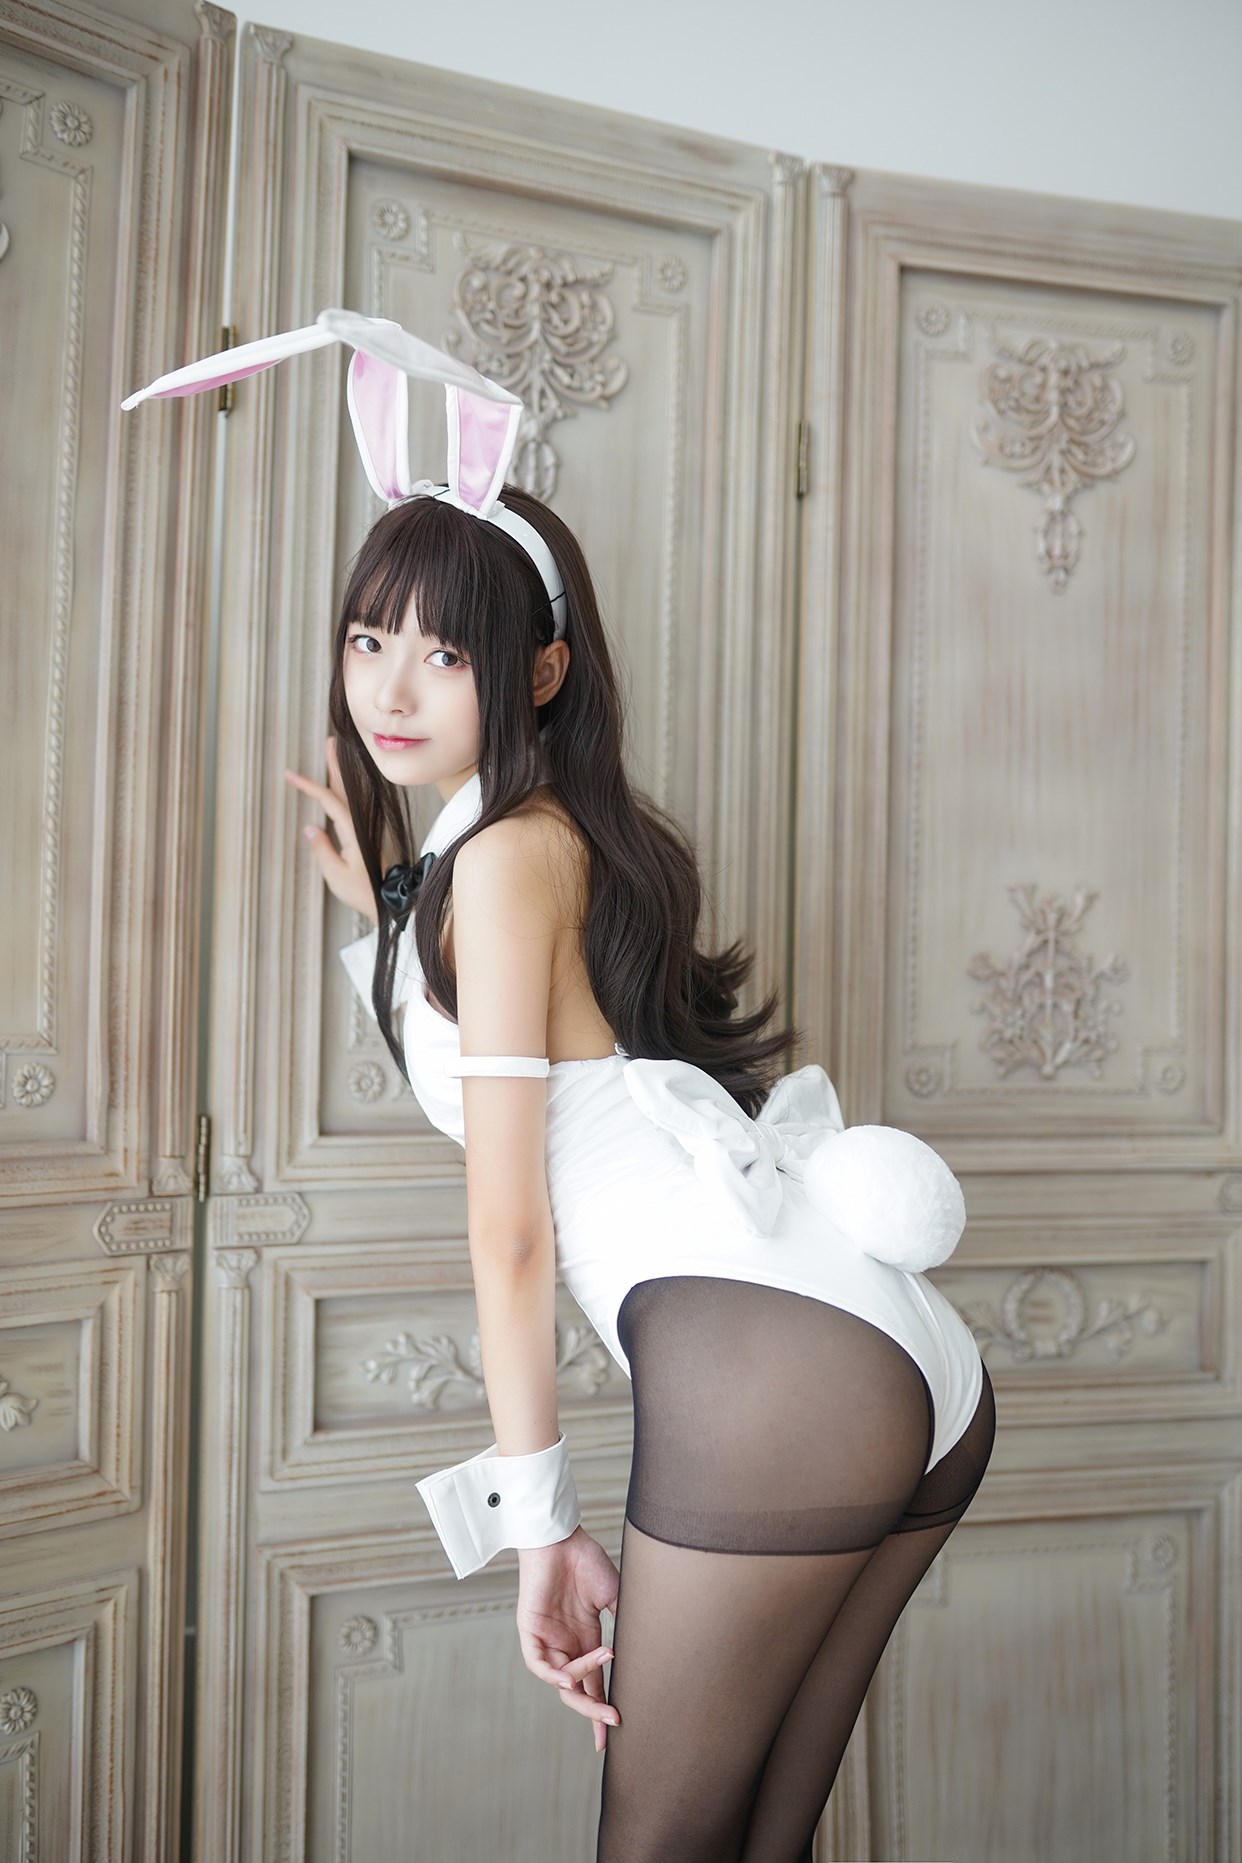 【兔玩映画】兔女郎vol.17-白兔 兔玩映画 第12张